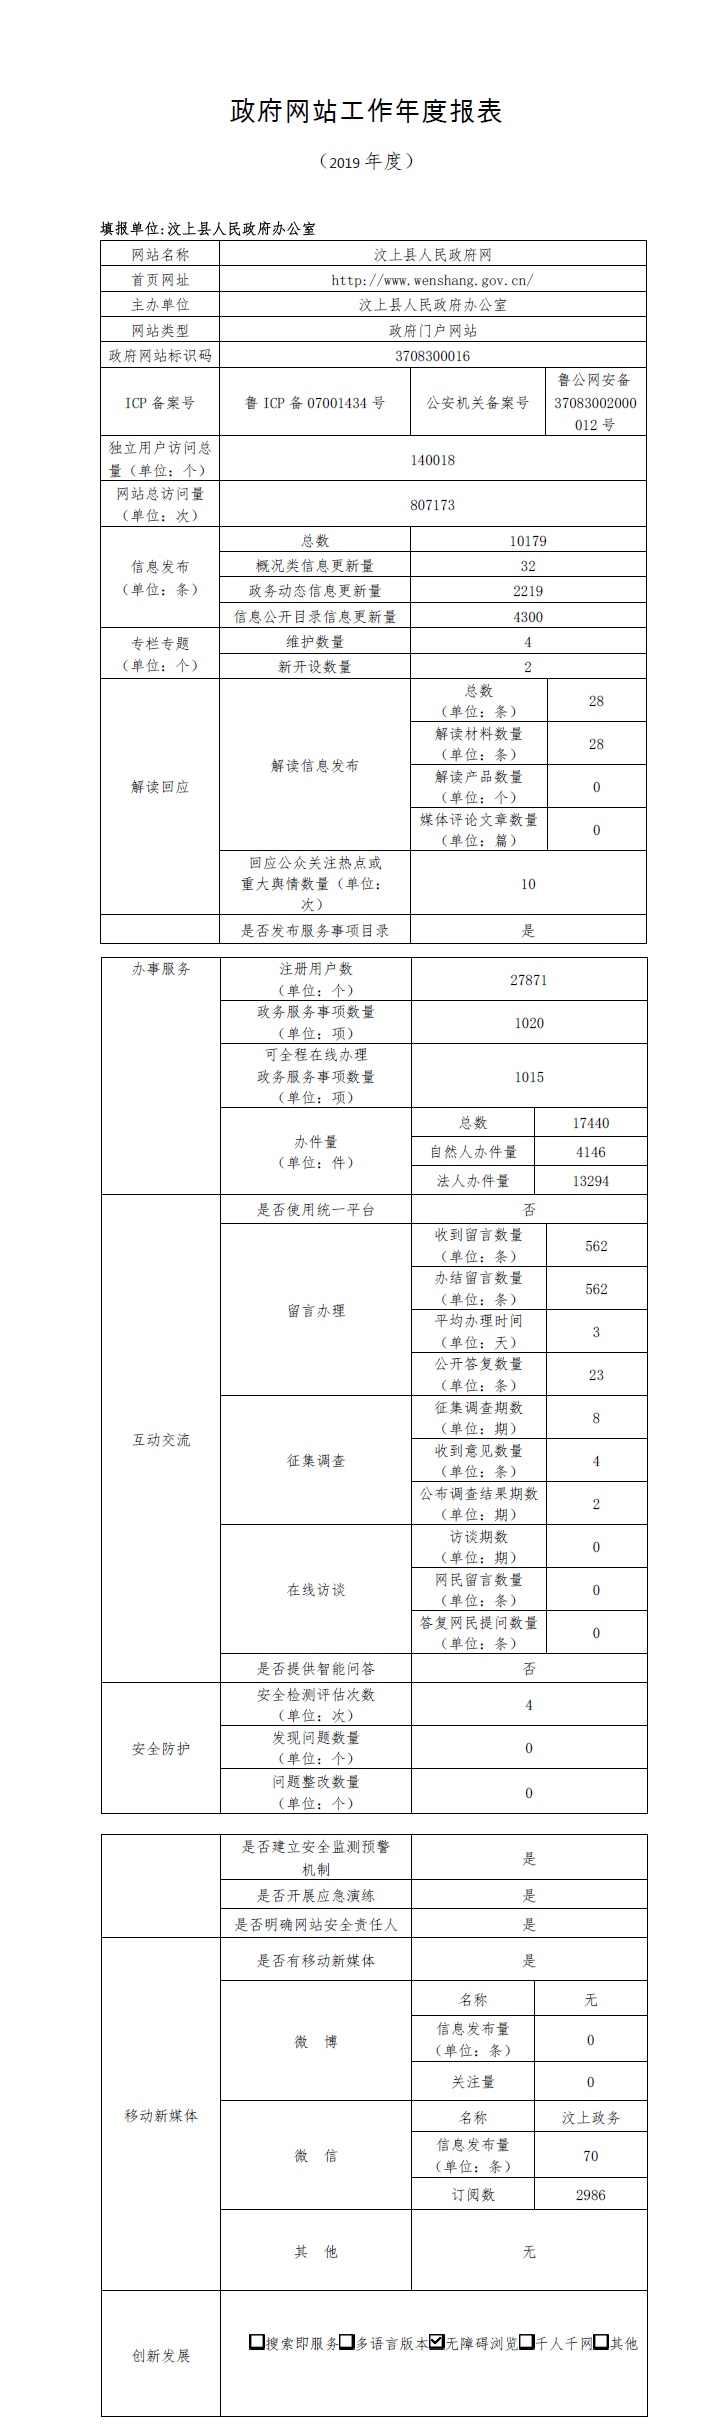 汶上县政府网站工作年度报表（2019年度）